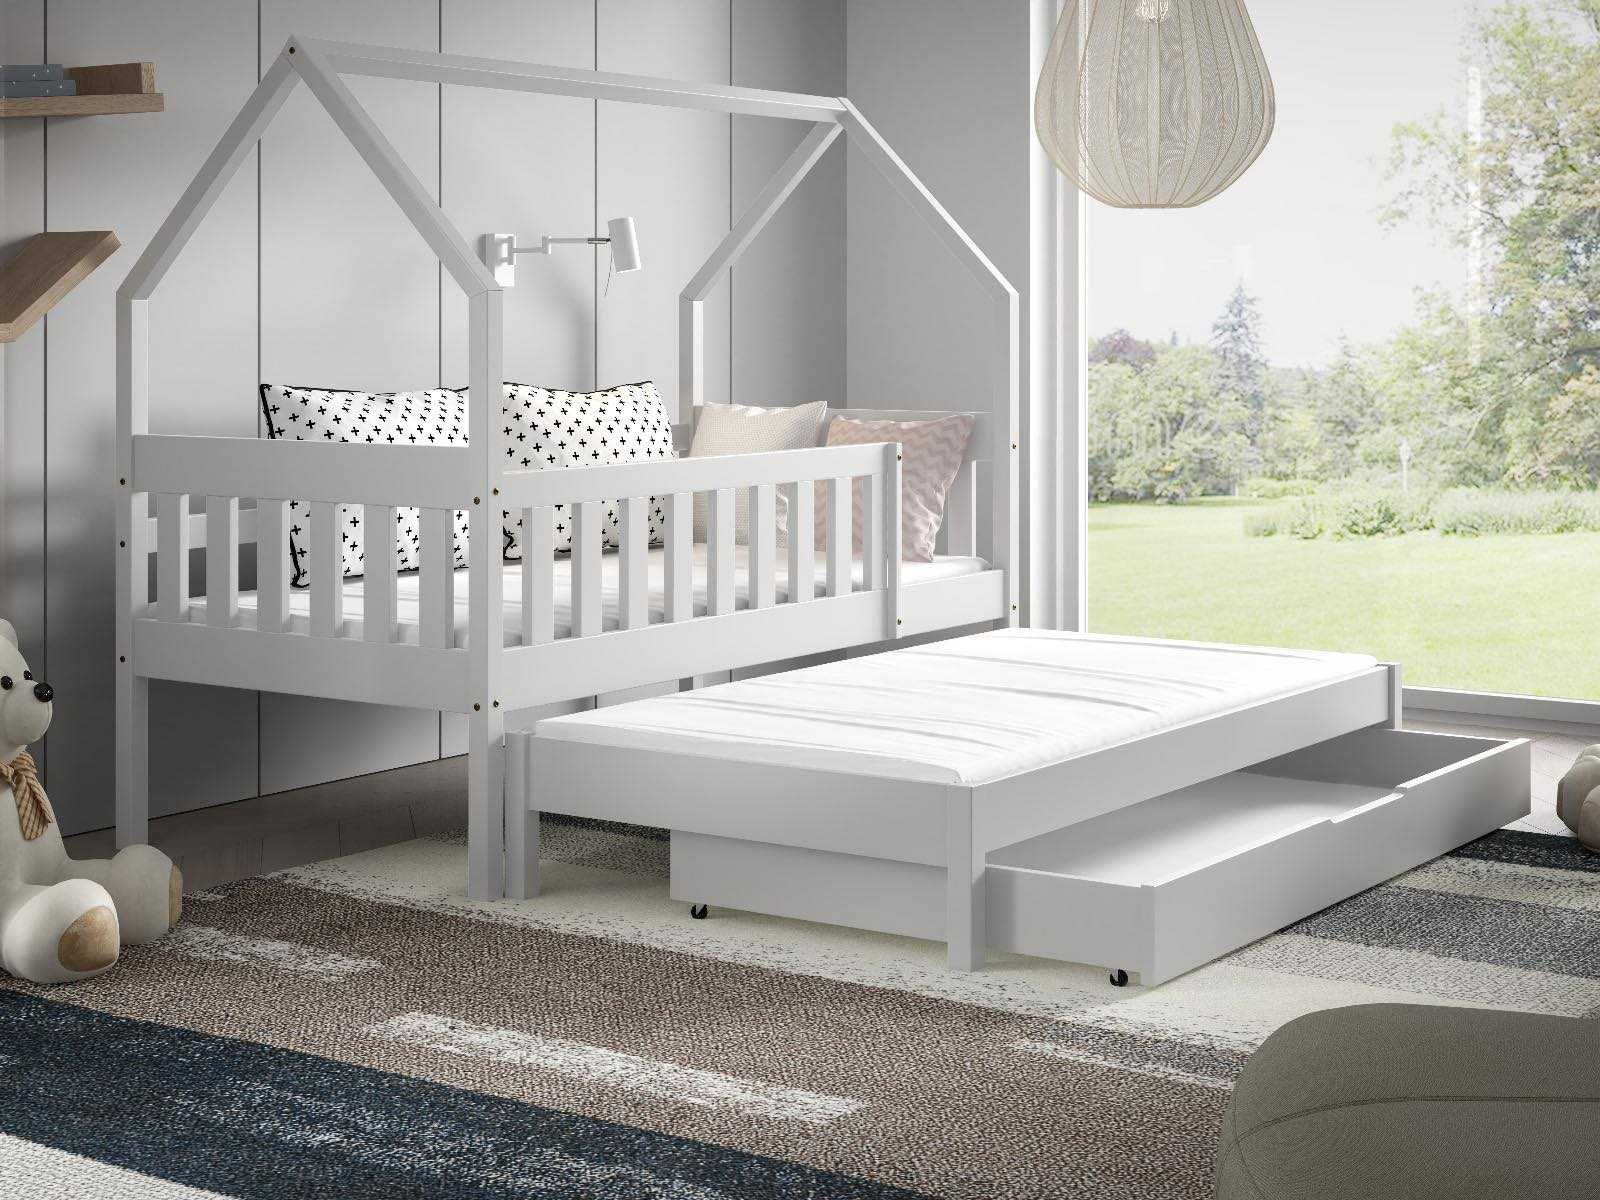 Łóżko dla dwójki dzieci DOMEK luna 160x80 - w zestawie materace!